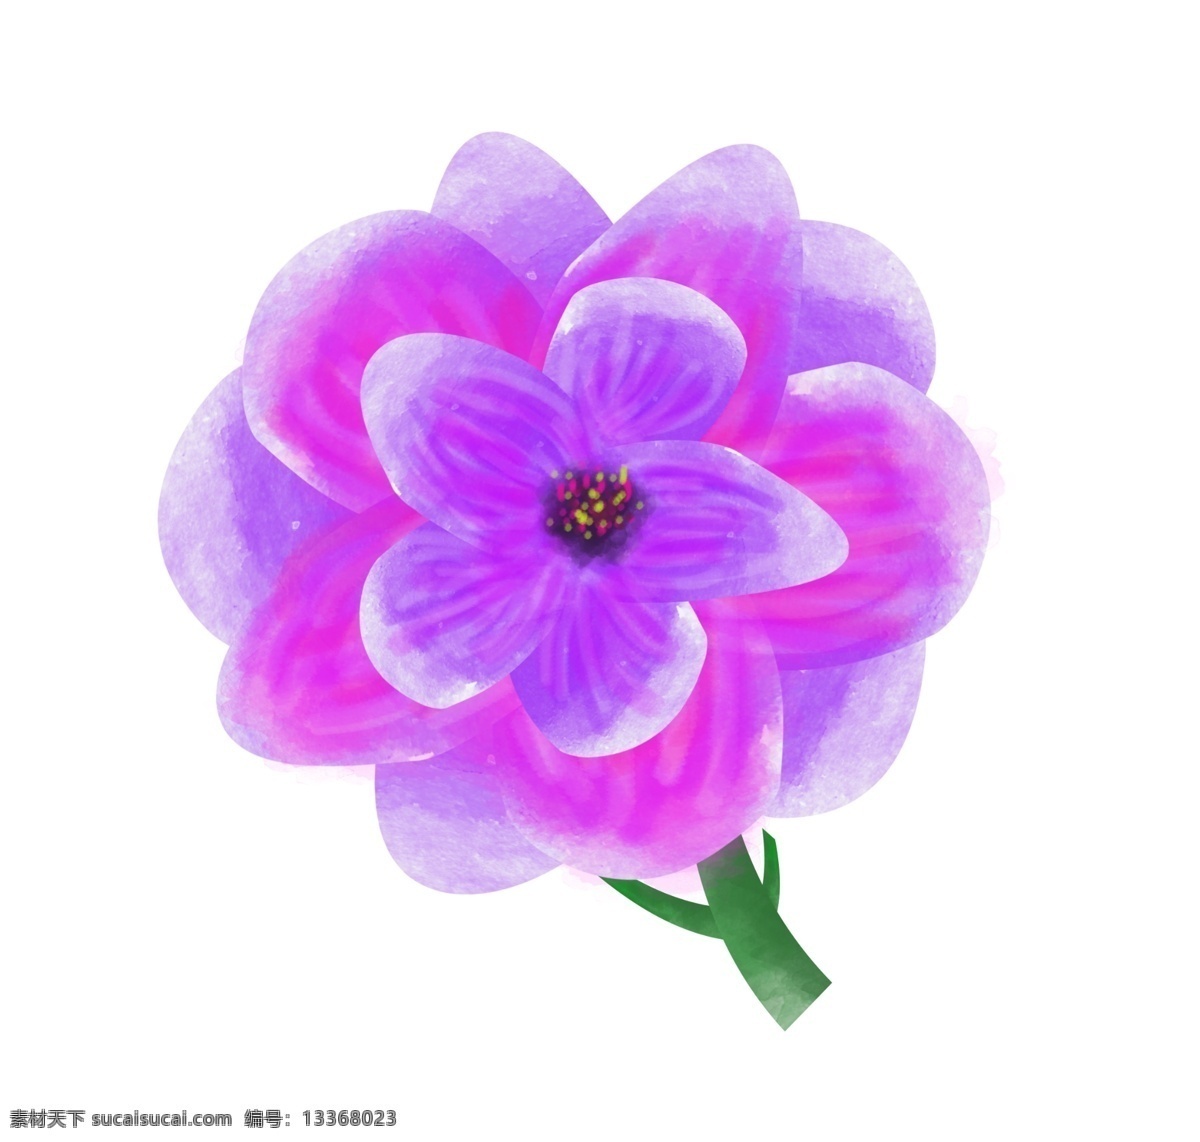 紫色 花朵 装饰 插画 紫色的花朵 漂亮的花朵 创意花朵 立体花朵 卡通花朵 花朵装饰 花朵插画